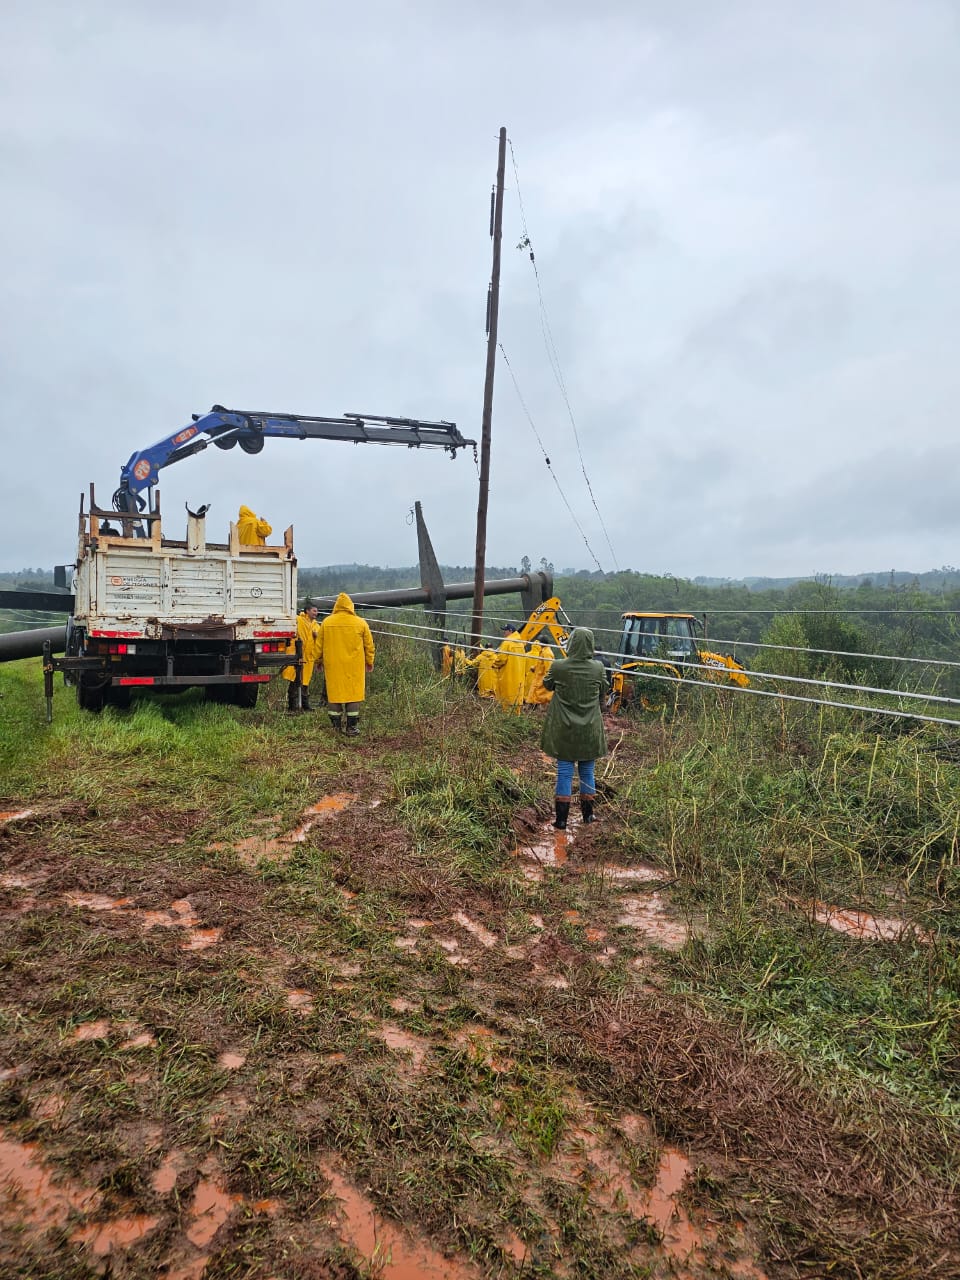 Operarios de Energía de Misiones trabajan para restaurar líneas eléctricas afectadas por el temporal y restablecer el servicio a localidades imagen-1